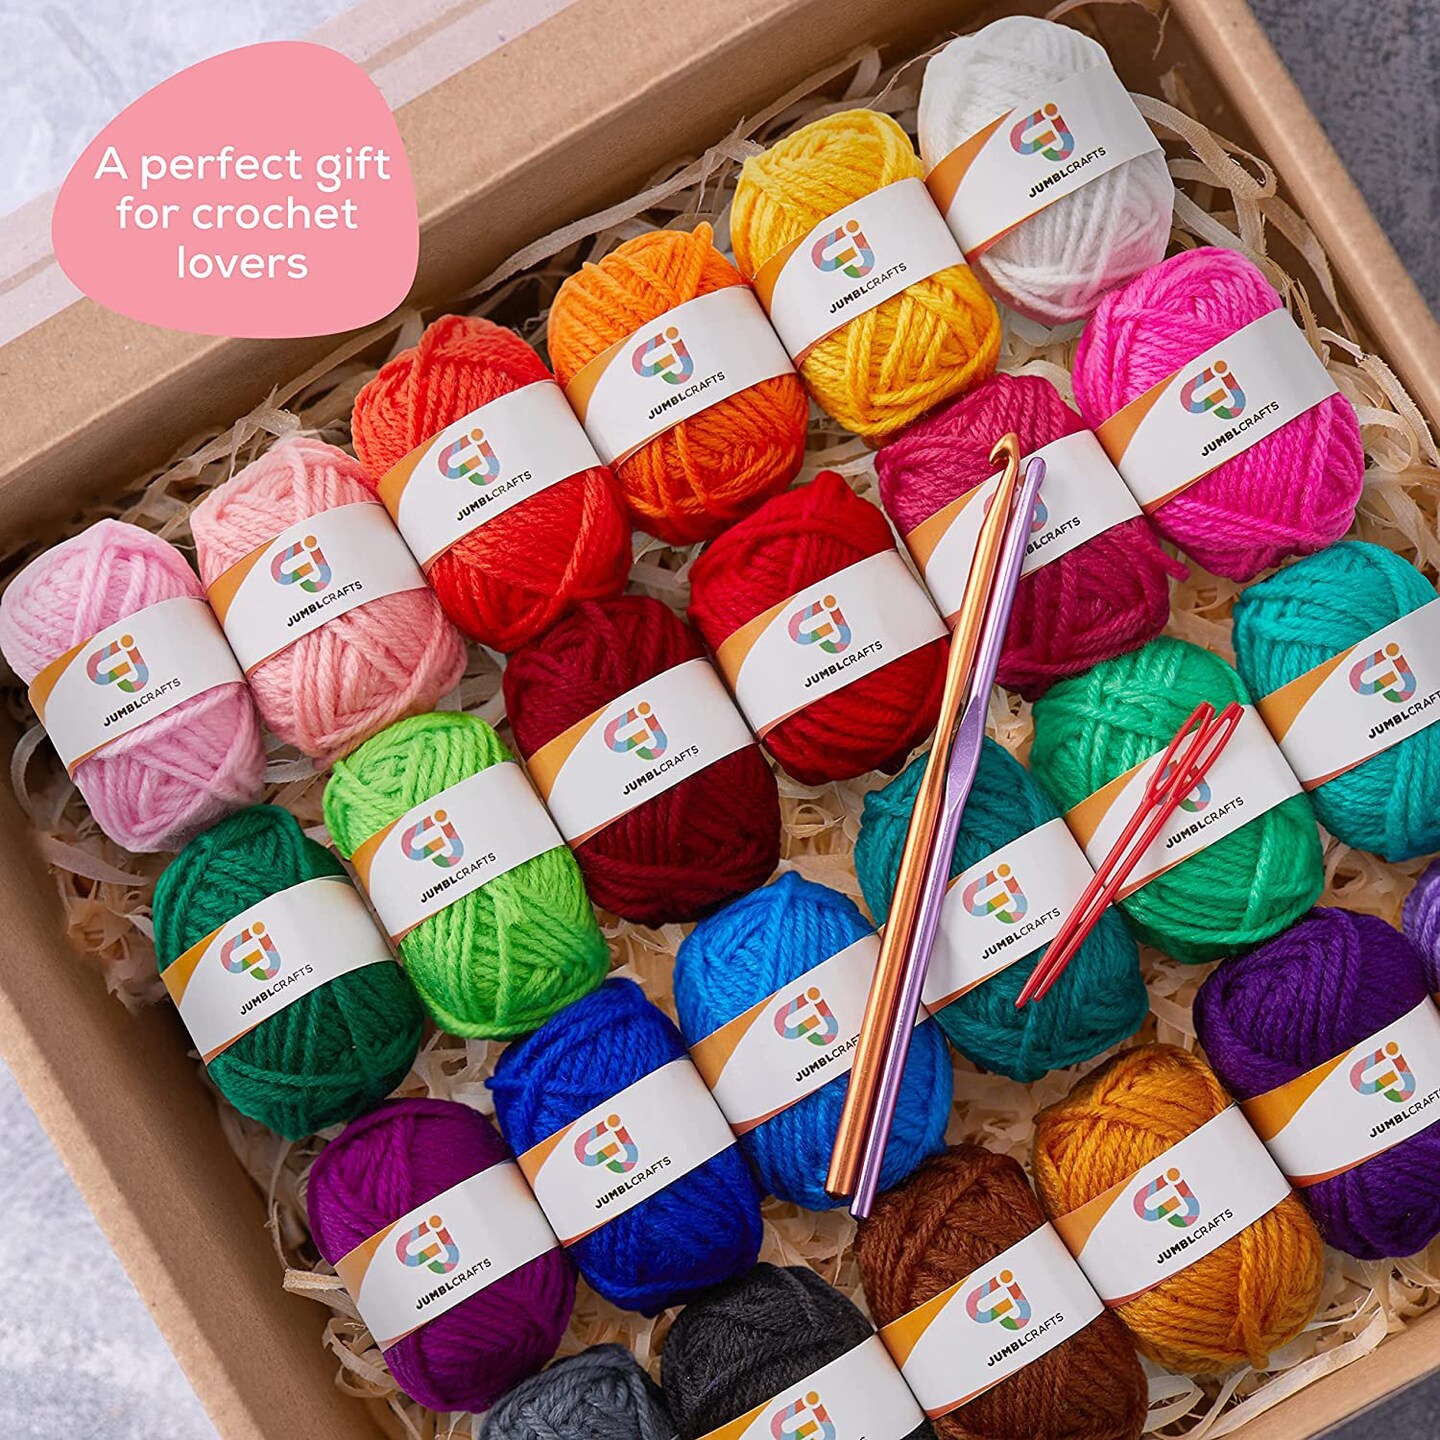 J MARK Beginner Crochet Kit for Adults and Kids – Complete